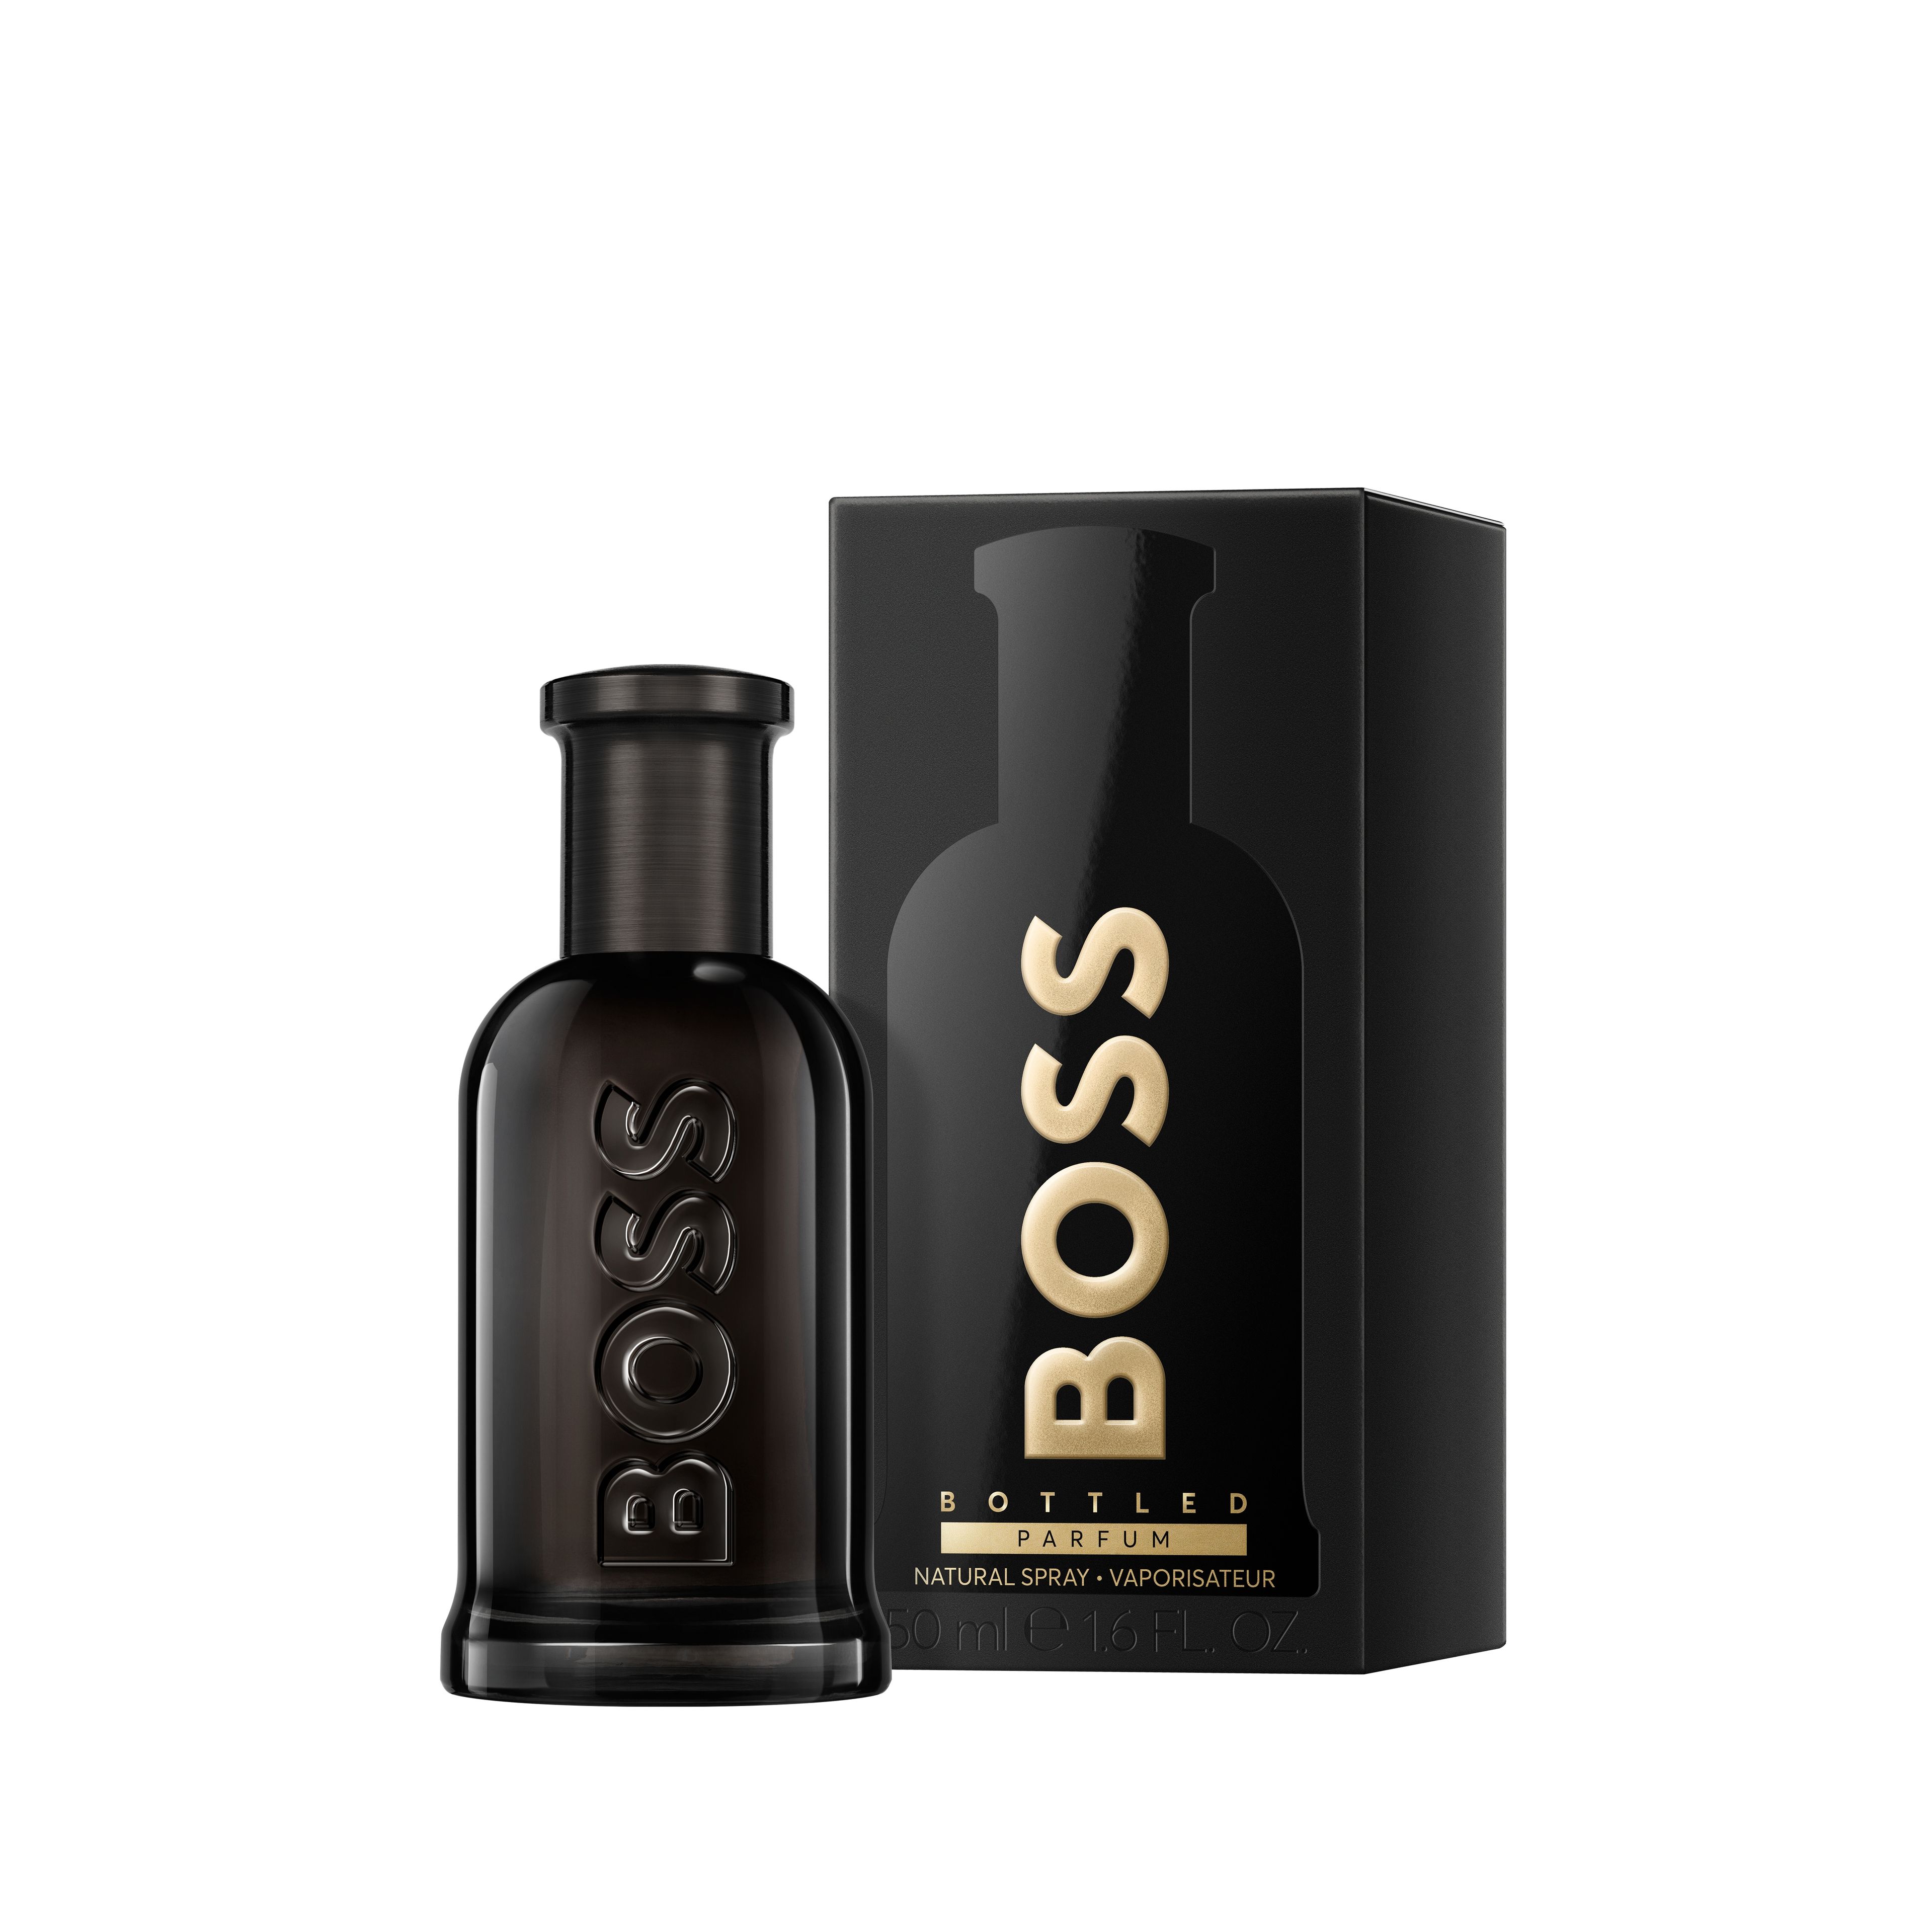 Hugo Boss Boss Bottled Parfum 2